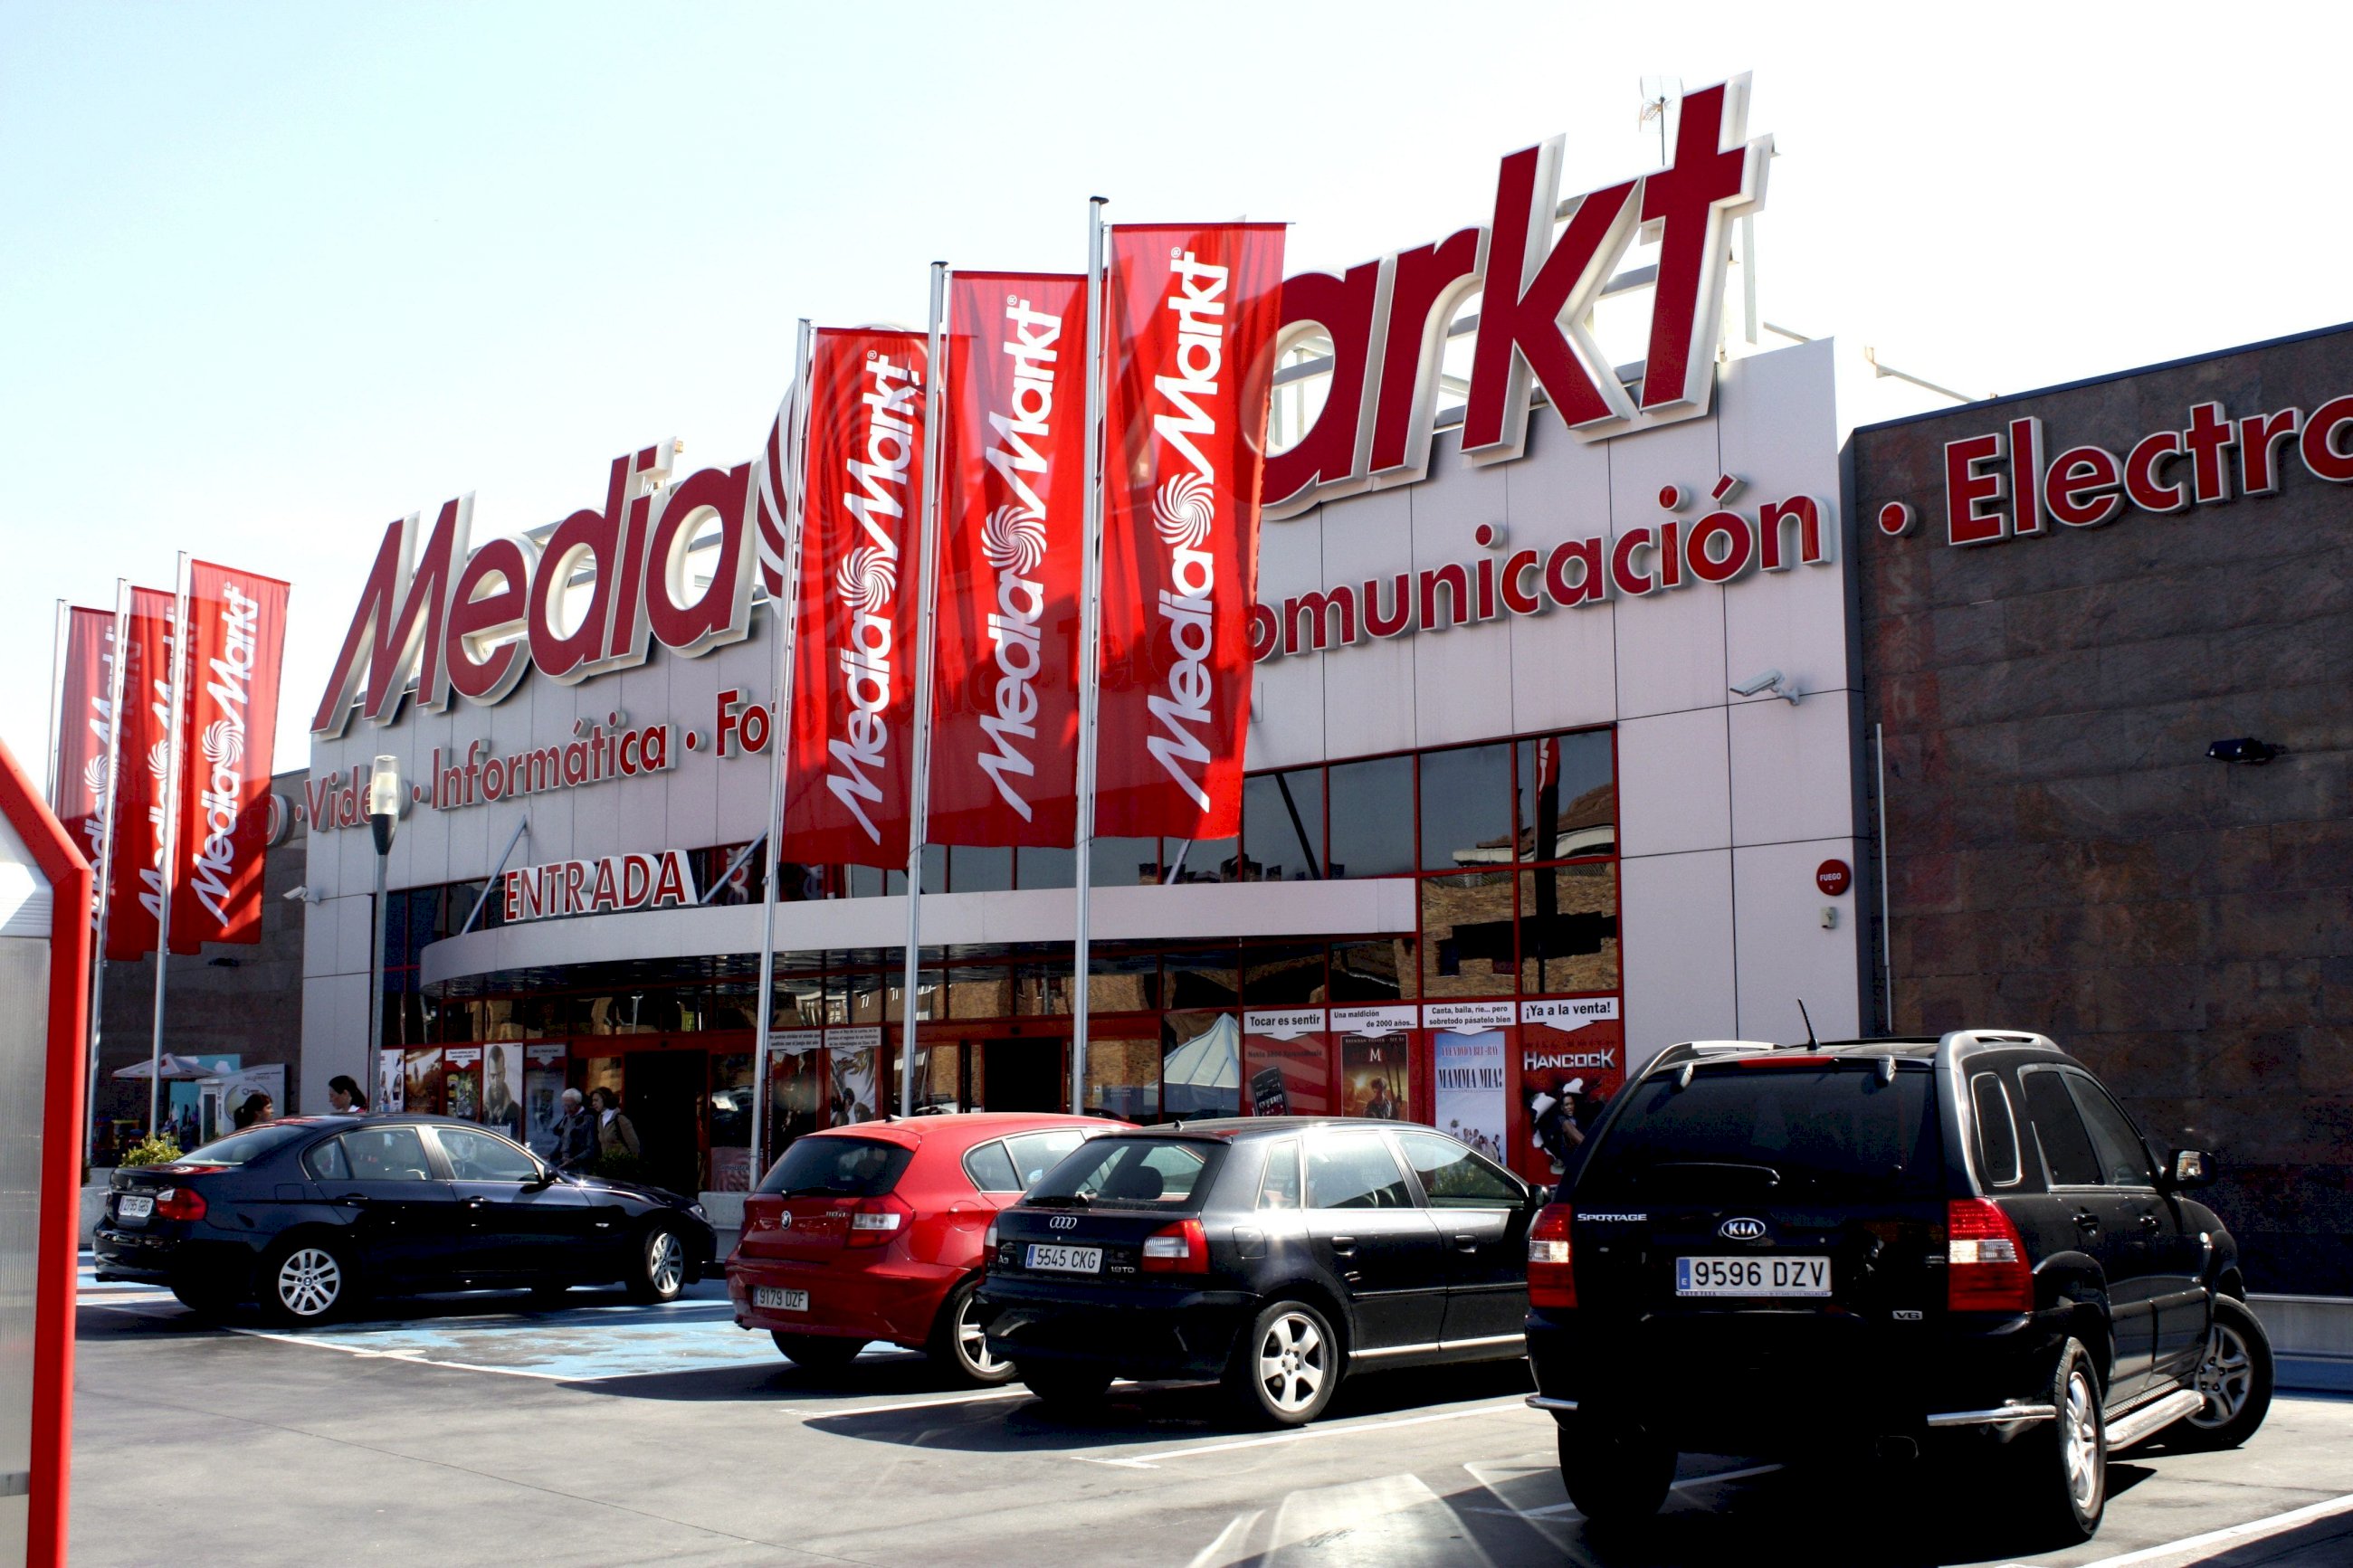 MediaMarkt España on X: 🎶Celebra el 𝗗𝗶́𝗮 𝗱𝗲𝗹 𝗣𝗮𝗱𝗿𝗲